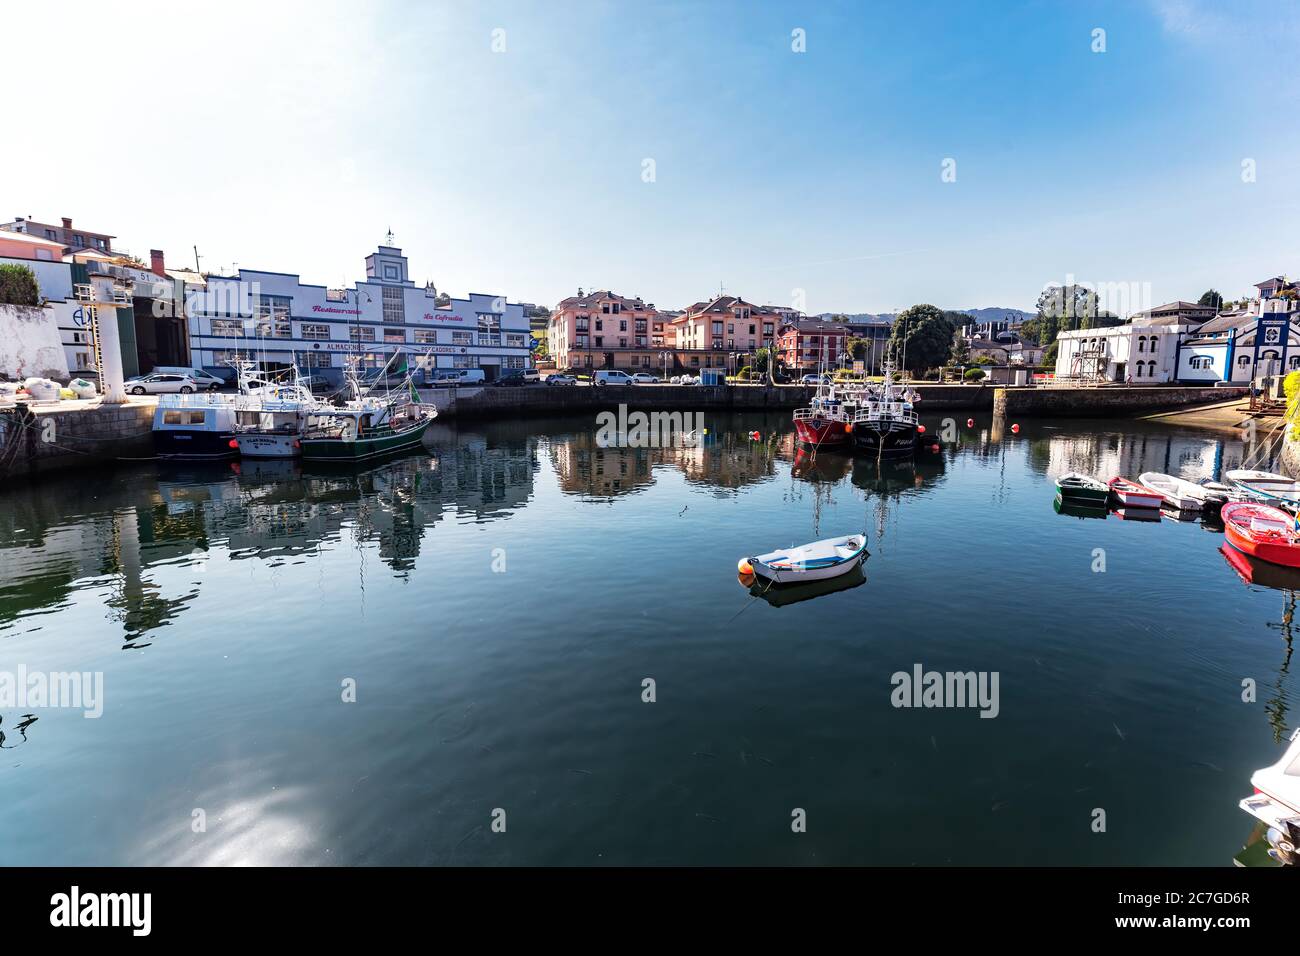 Puerto de Vega, Spanien - August 23 2019: Schöner und malerischer Hafen in Puerto de Vega, Navia. Es wurde mit dem Titel «Beispielstadt Asturiens» ausgezeichnet Stockfoto